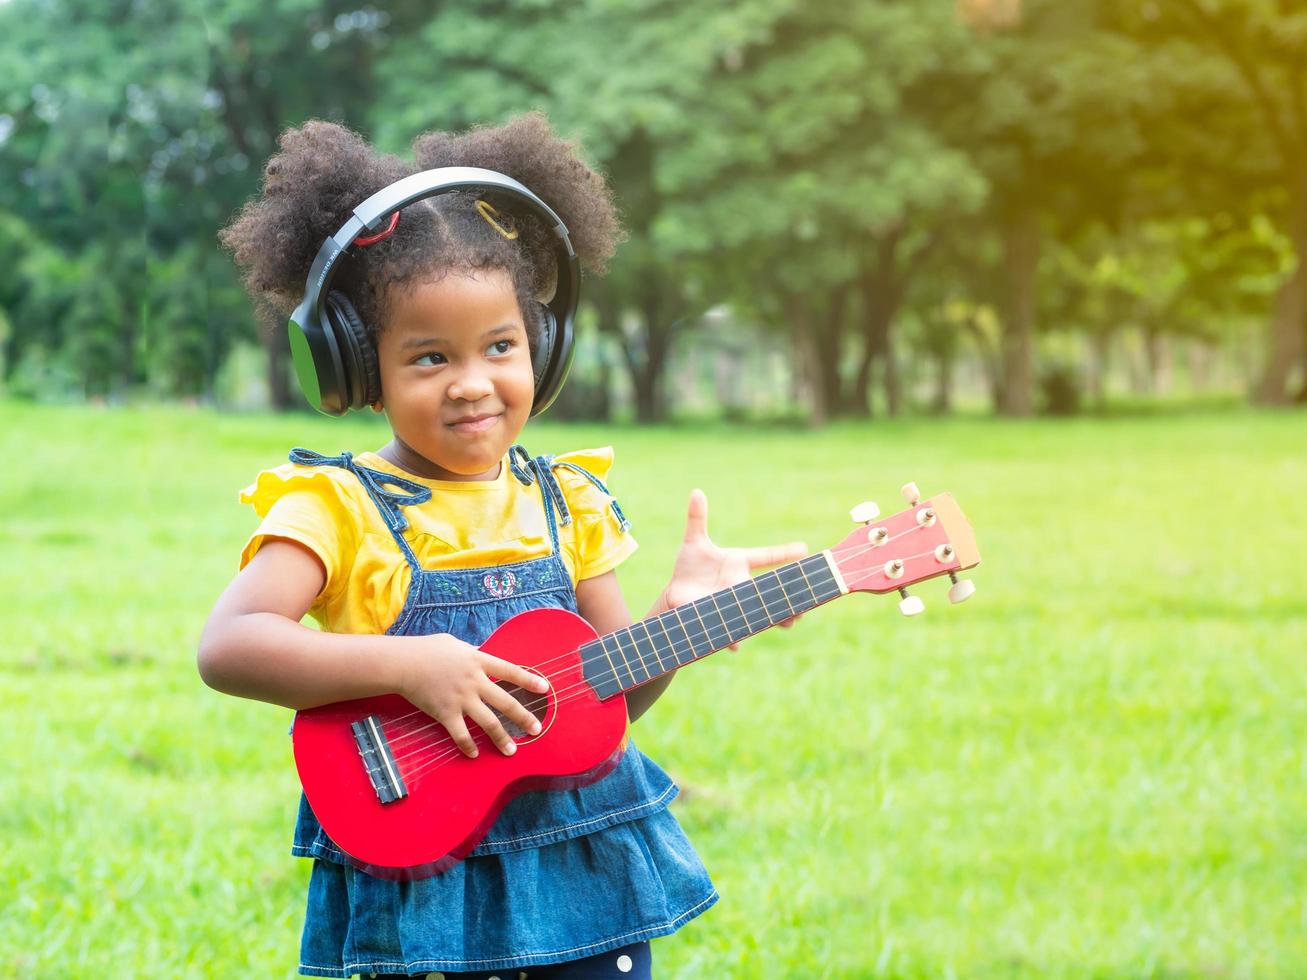 la ragazza sta sull'erba, indossa le cuffie e sta imparando a suonare le corde dell'ukulele foto